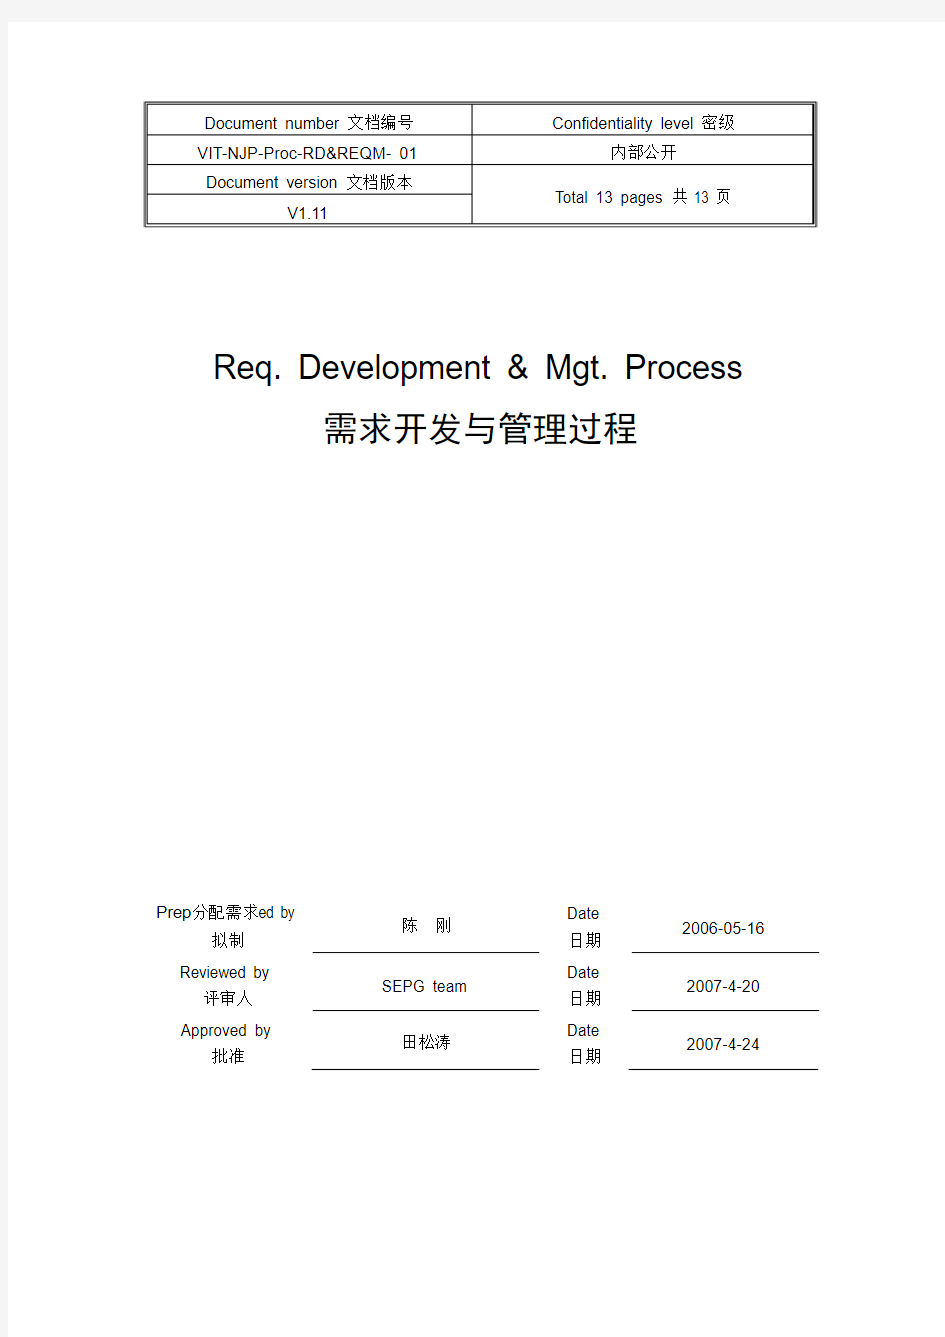 需求开发与管理过程(Req. Development  Mgt. Process)